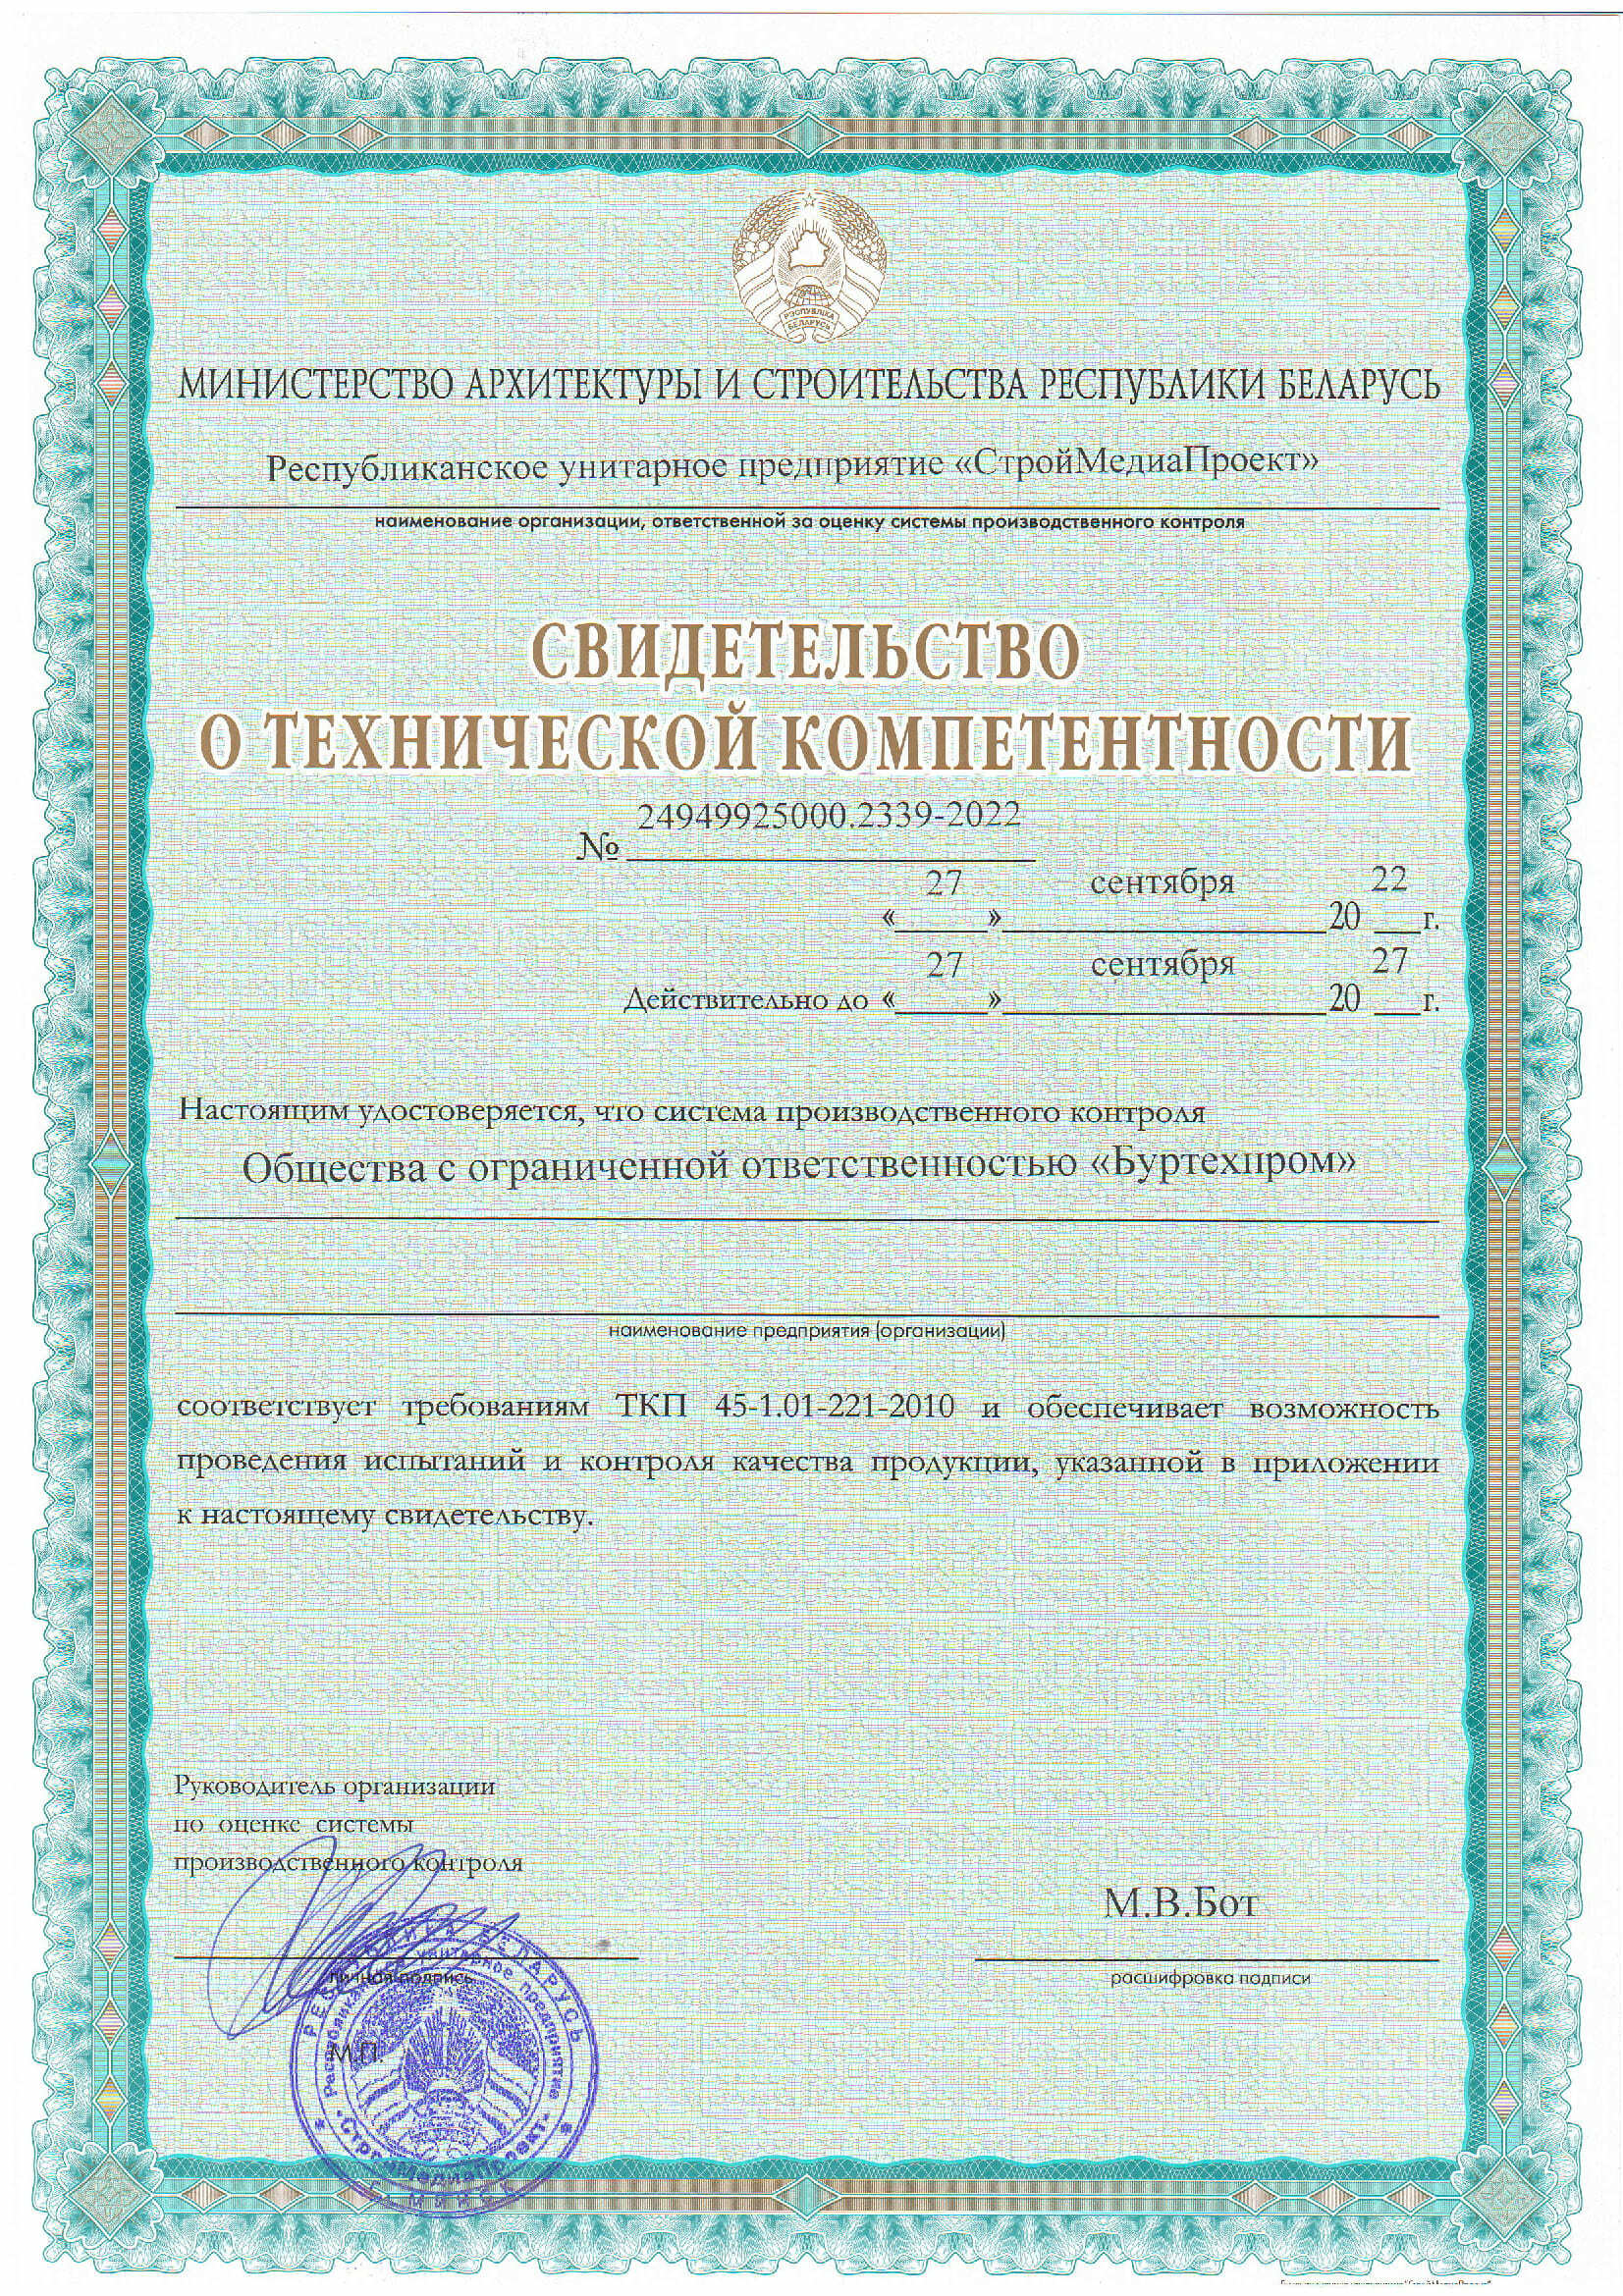 Свидетество о технической компетентности ООО Буртехпром, соответствует требованиям ТКП 44-1.01-221-2010 и обеспечивает возможность проведения испытаний и контроля качества продукции